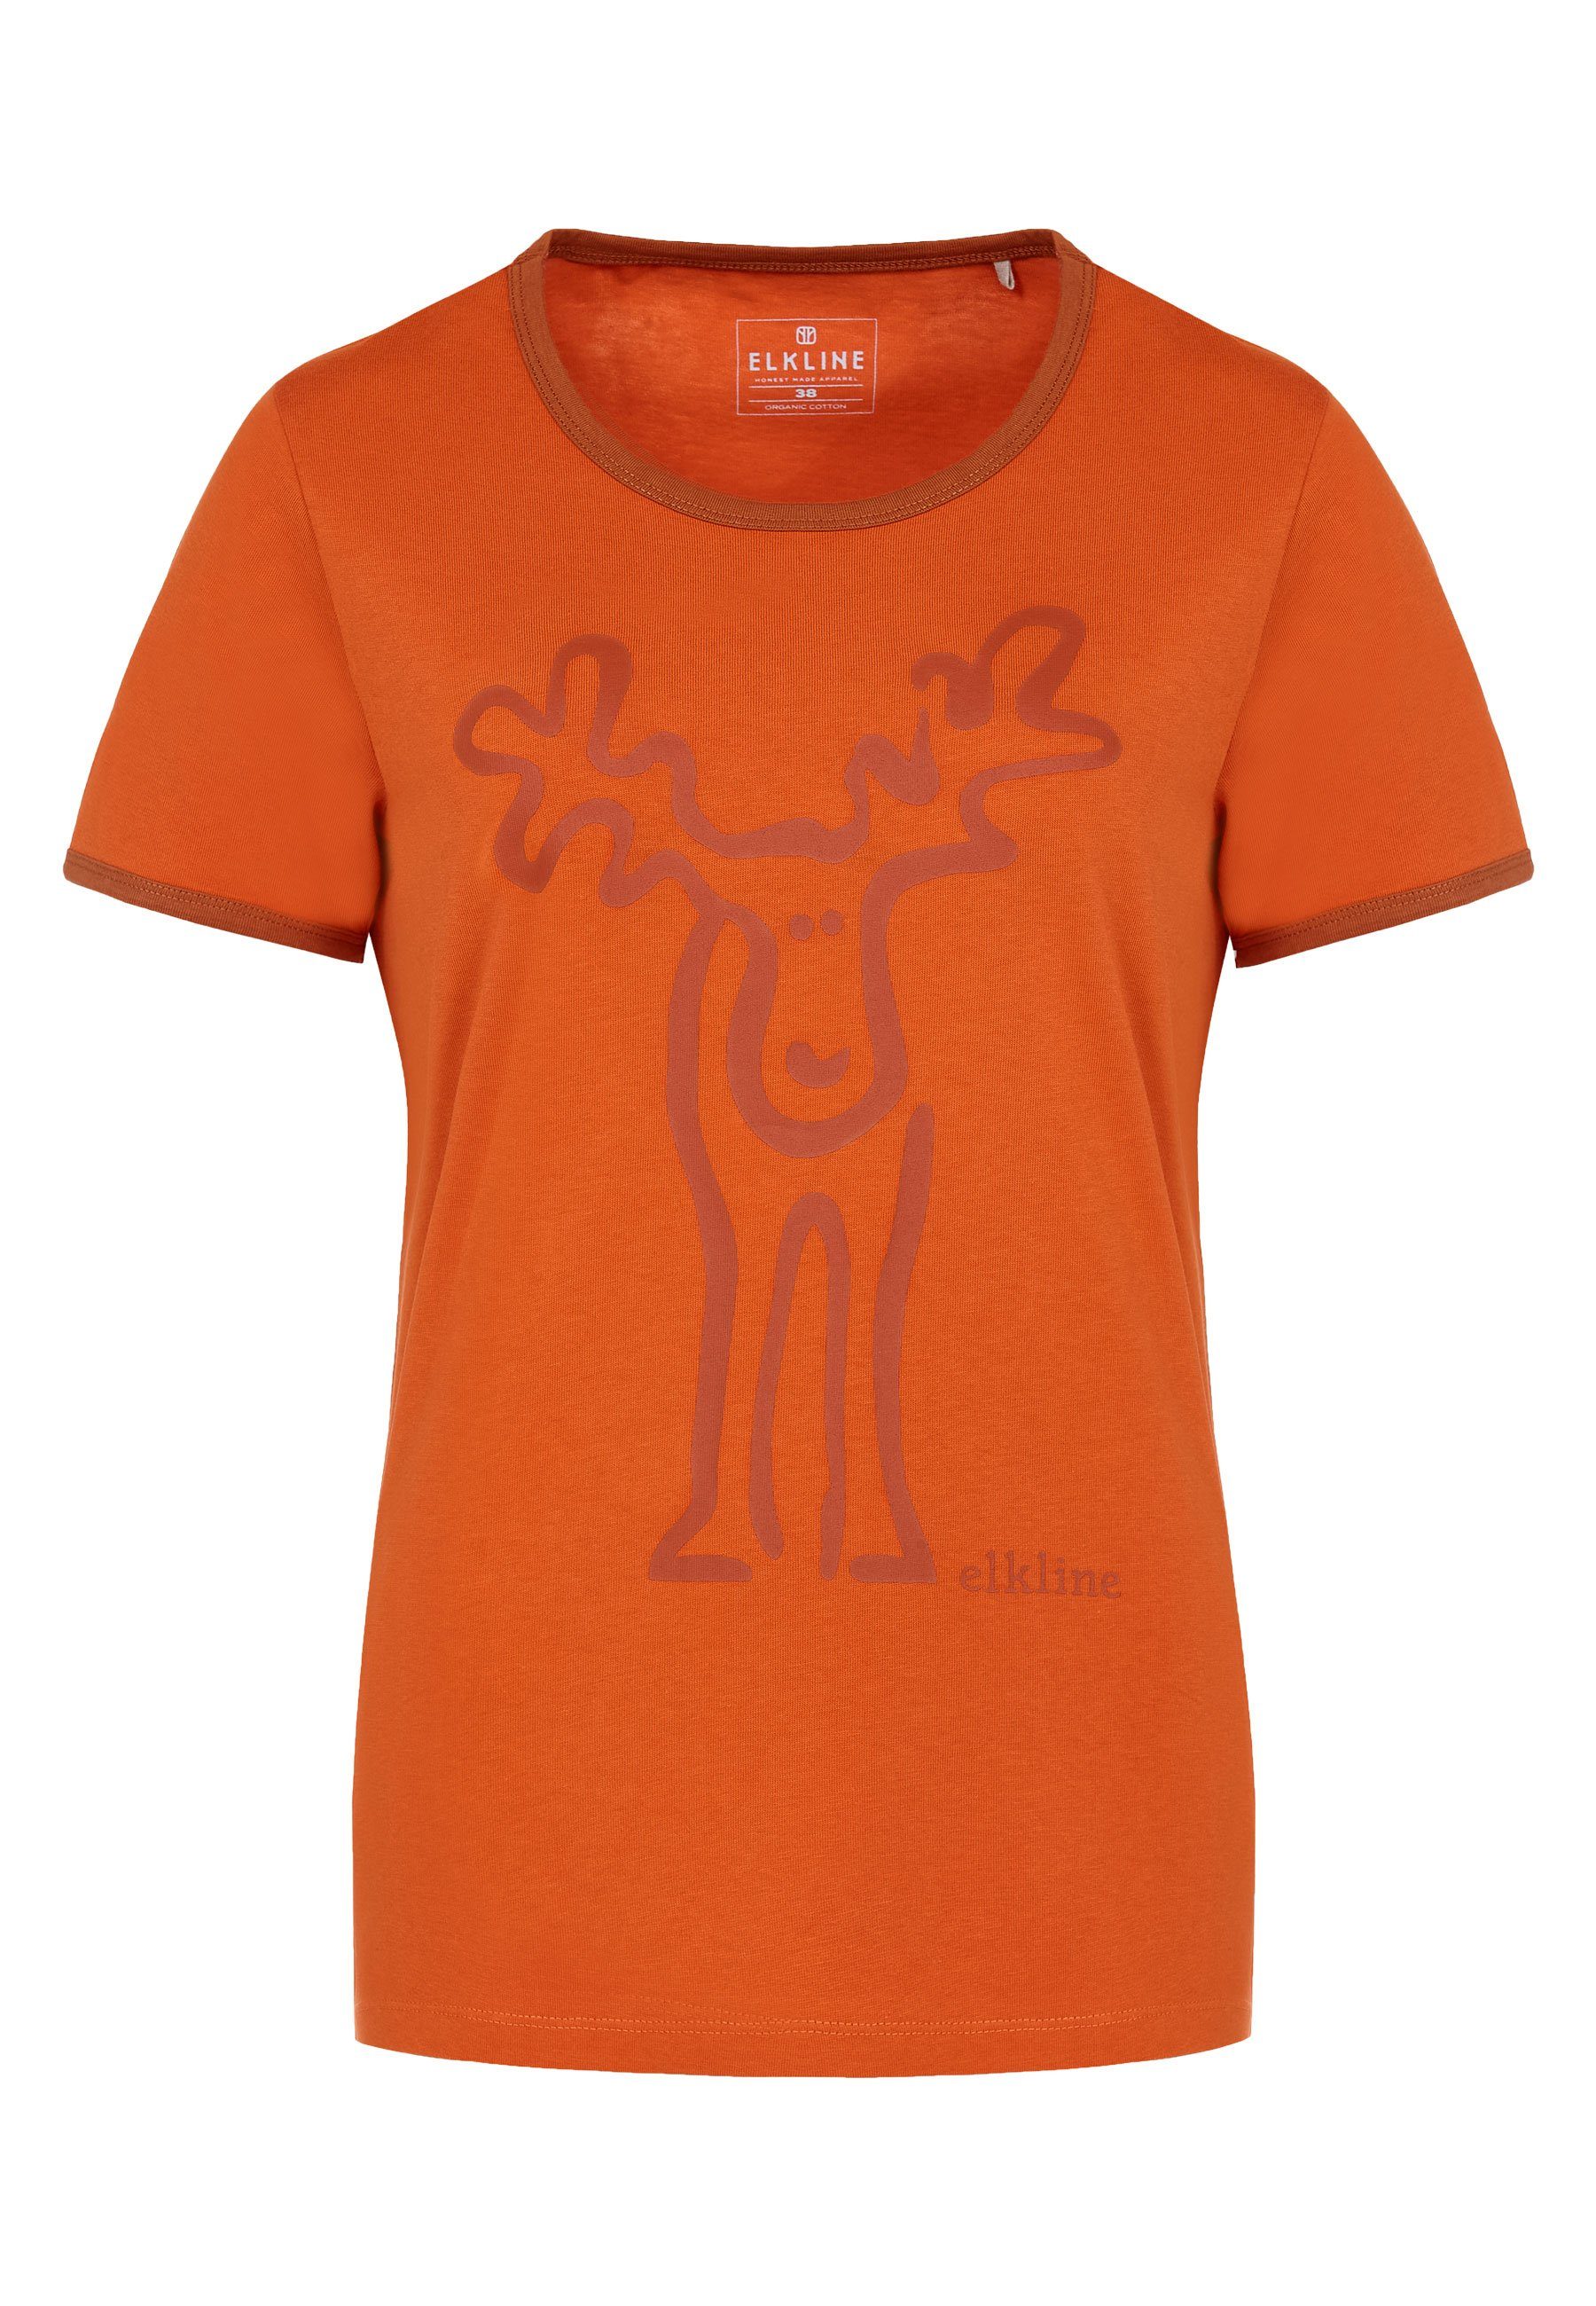 Elkline T-Shirt Rudolfine Retro Elch Brust und Rücken Print